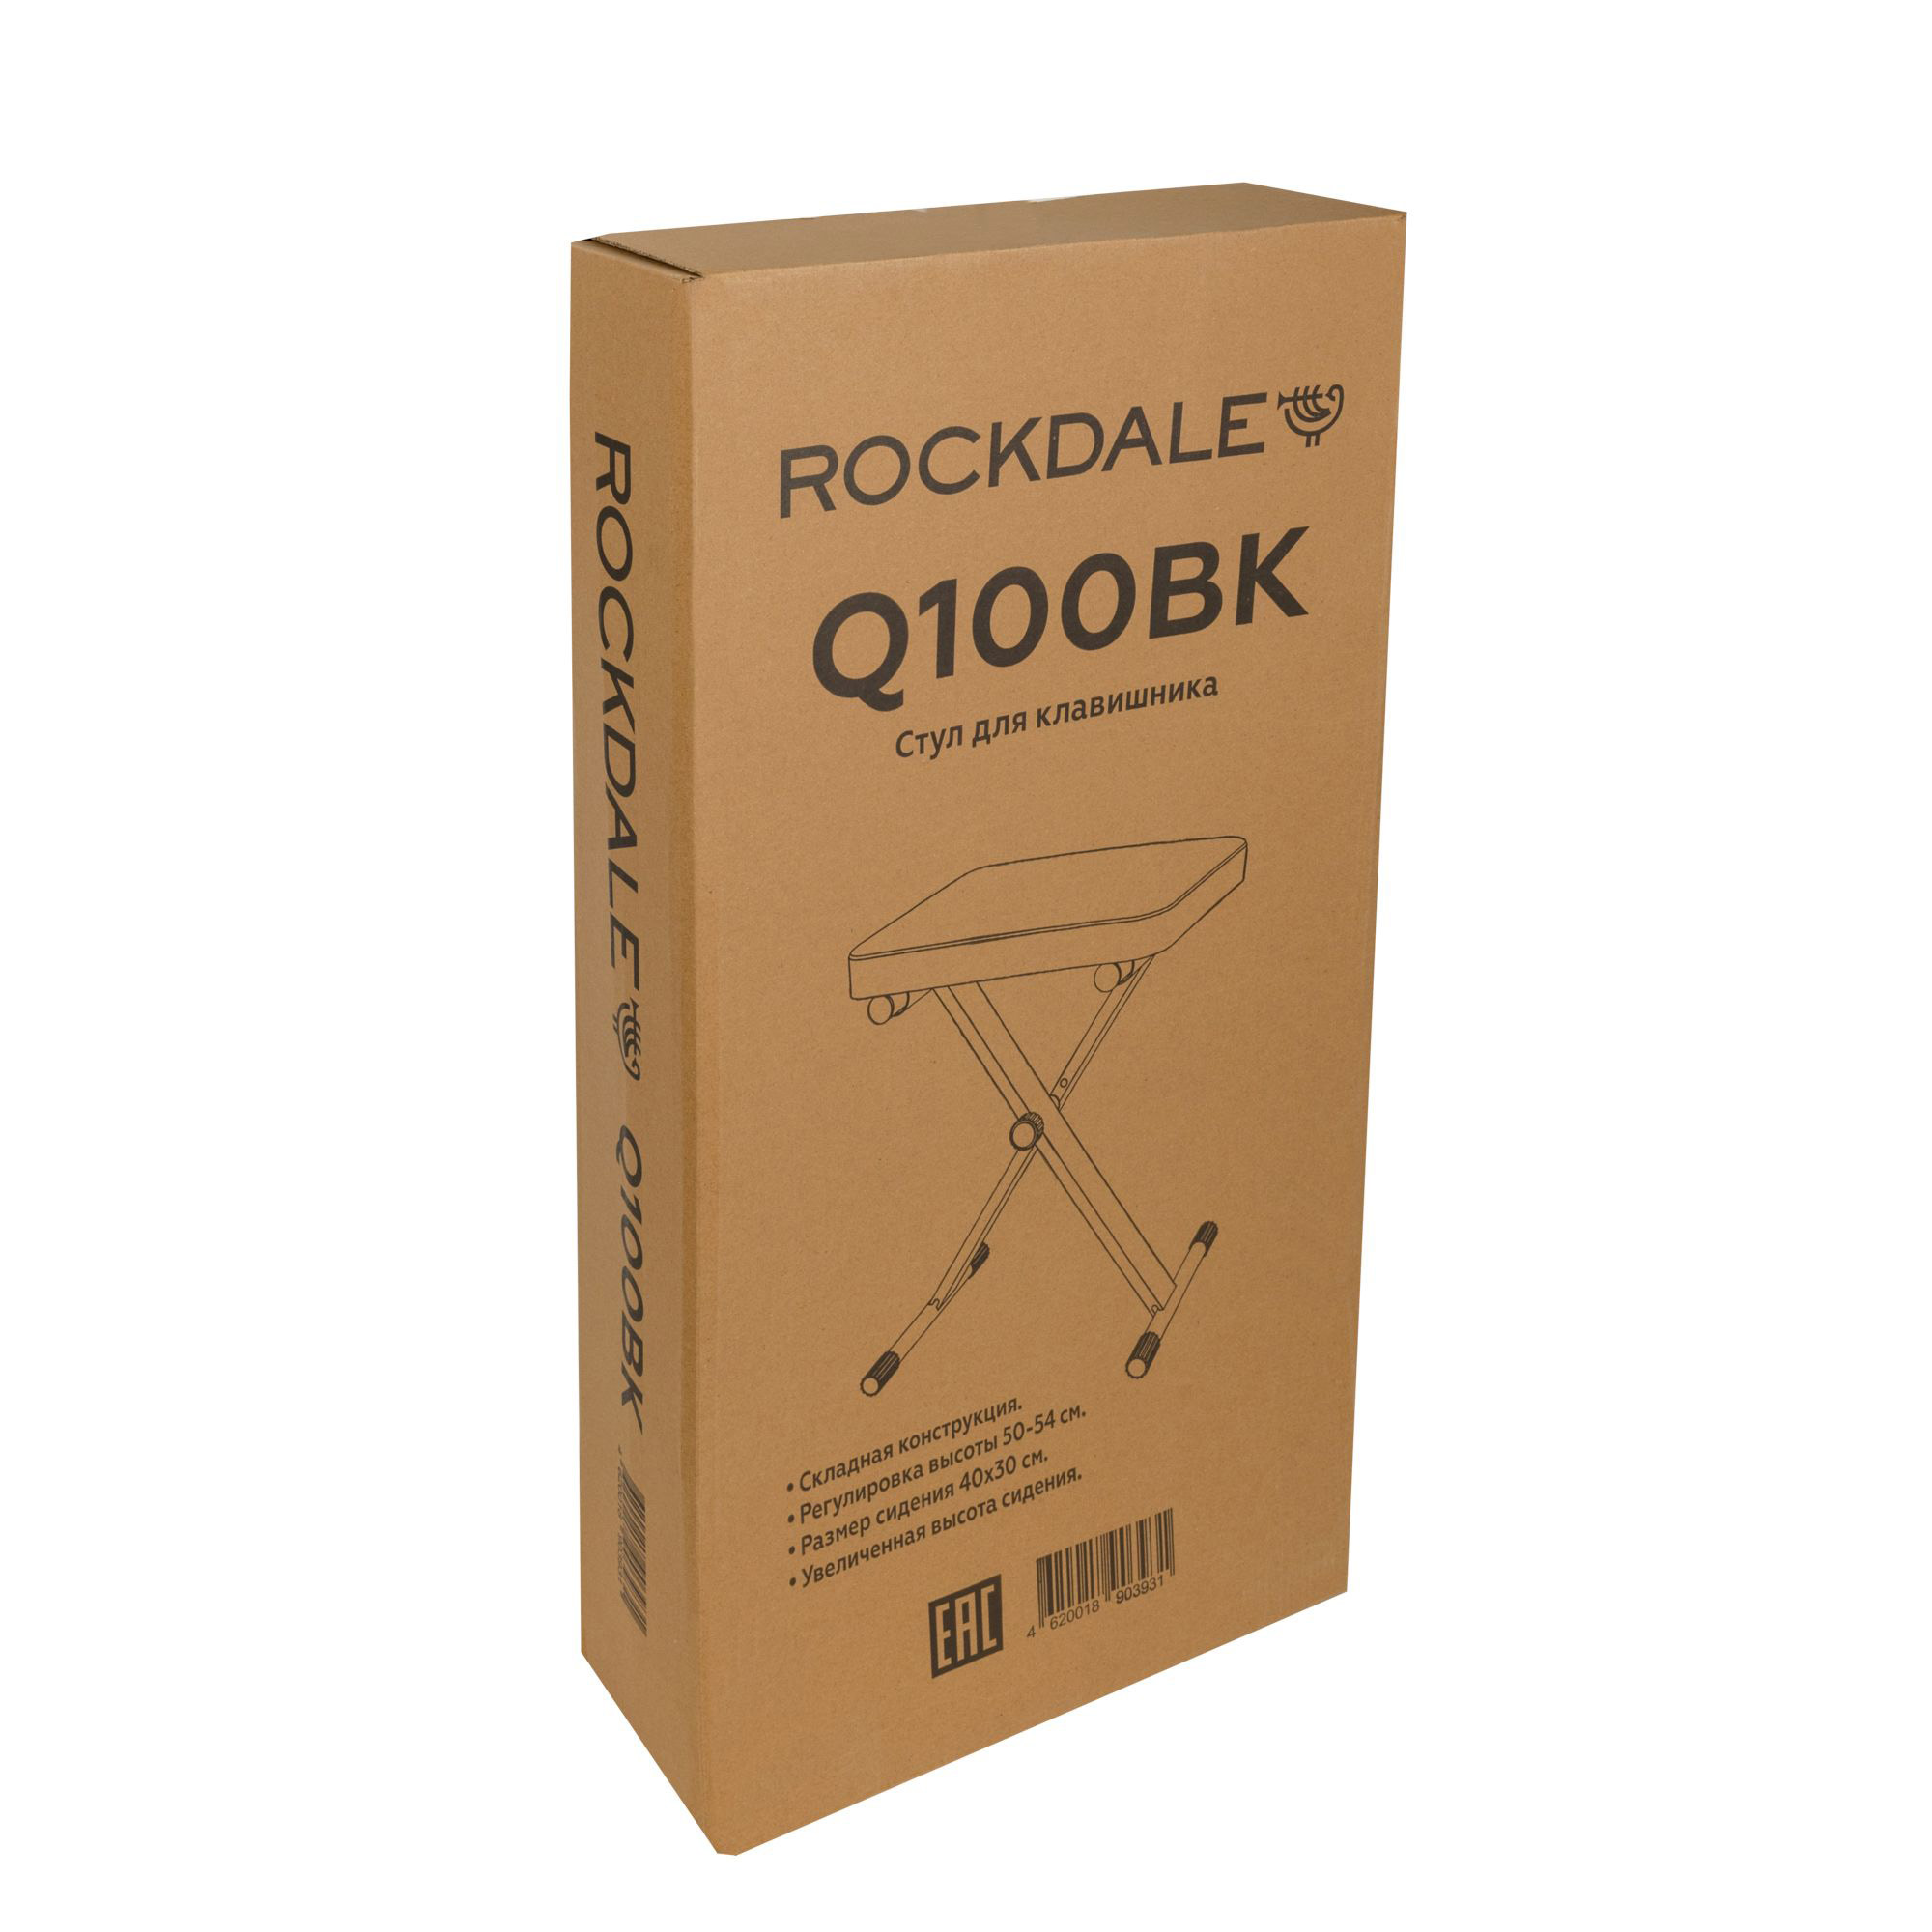 Rockdale Q-100 Банкетки для клавишных инструментов